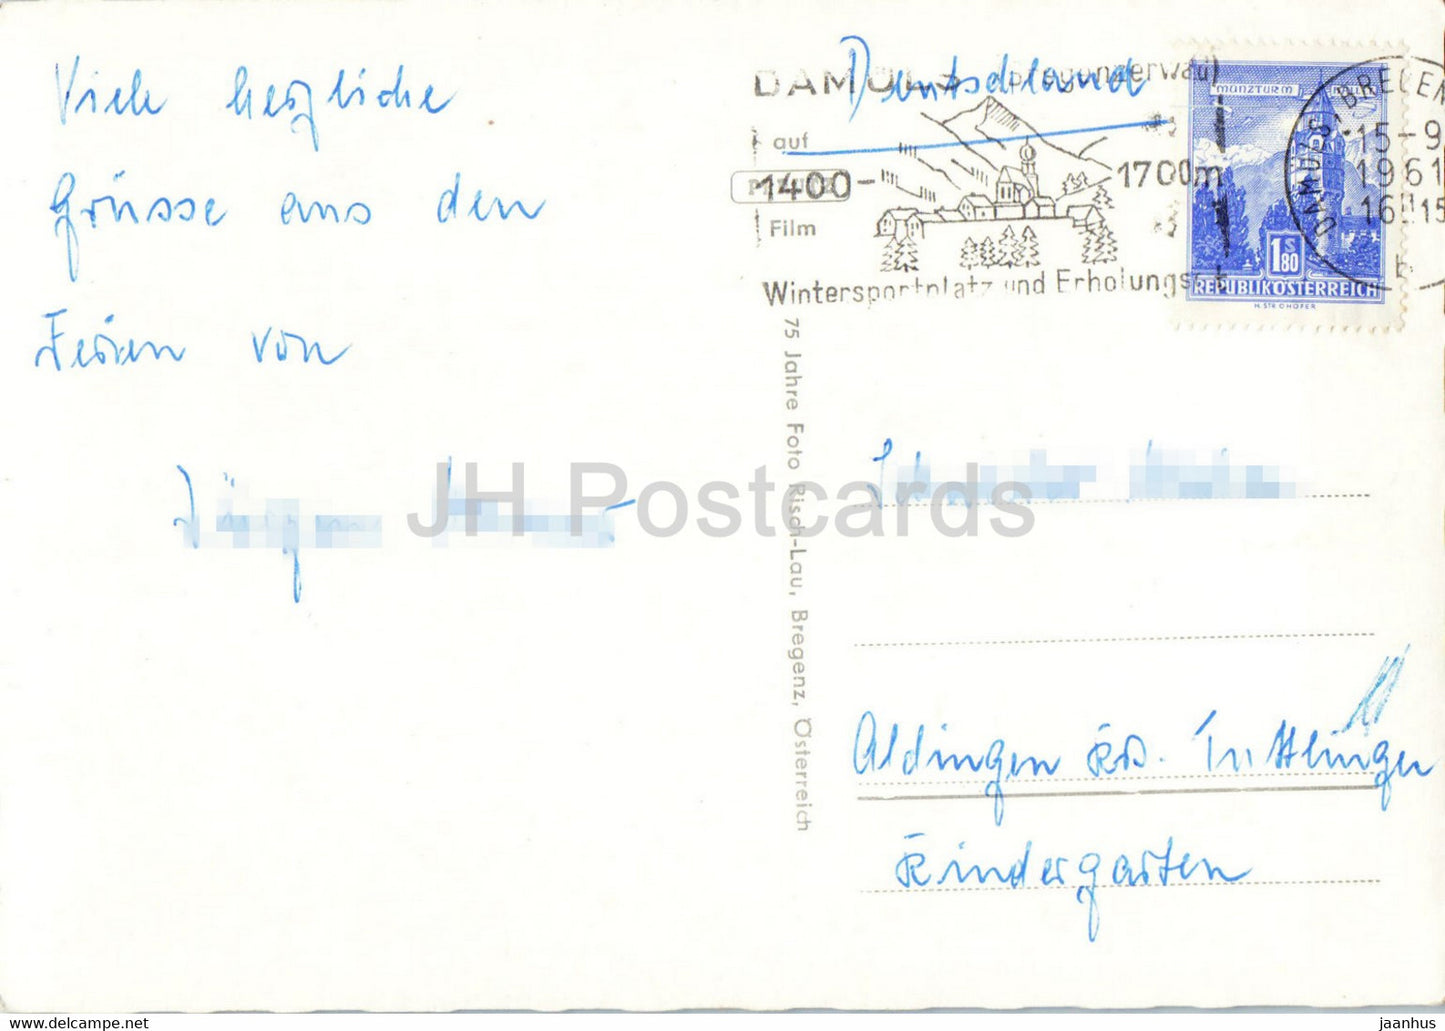 Damuls i Bregenzerwald - Vorarlberg - carte postale ancienne - 1961 - Autriche - utilisé